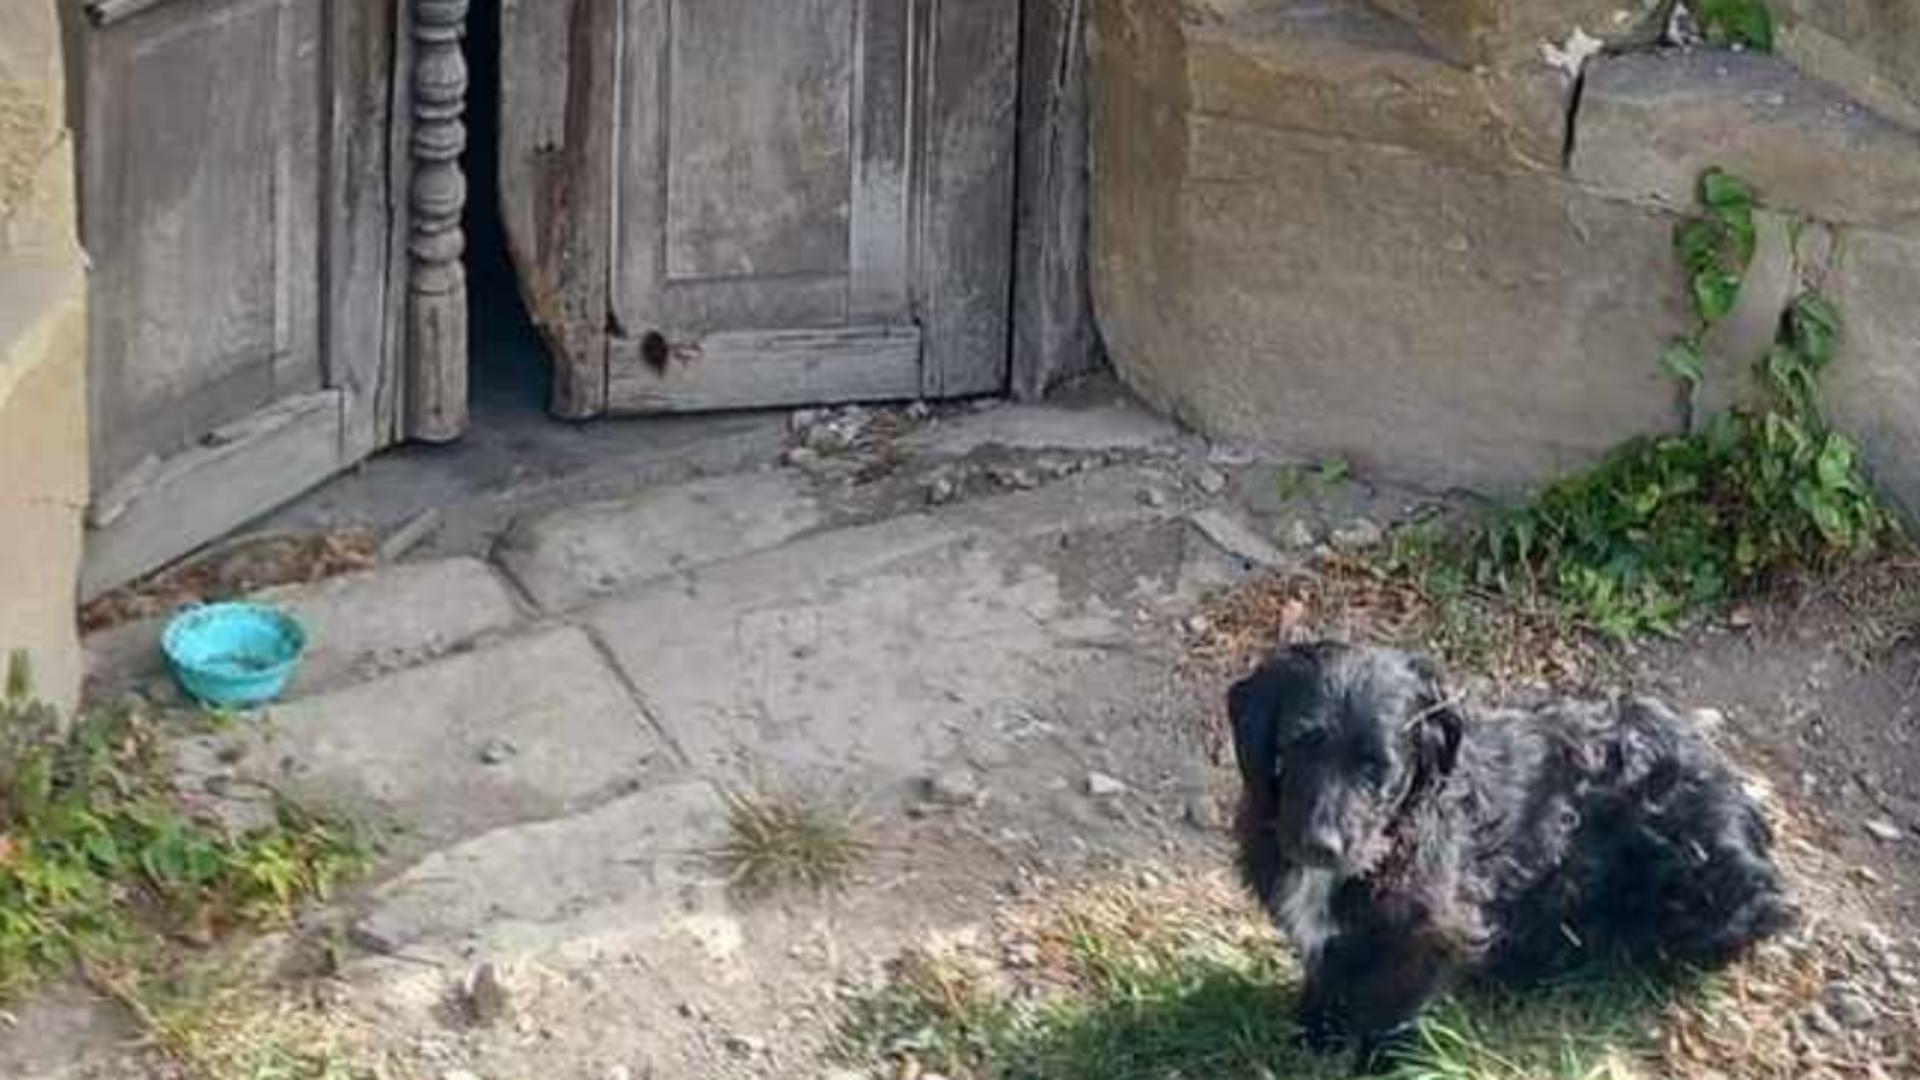 Hachiko de România. Un cățel își așteaptă stăpânul mort în fața unei biserici părăsite din Bistrița-Năsăud